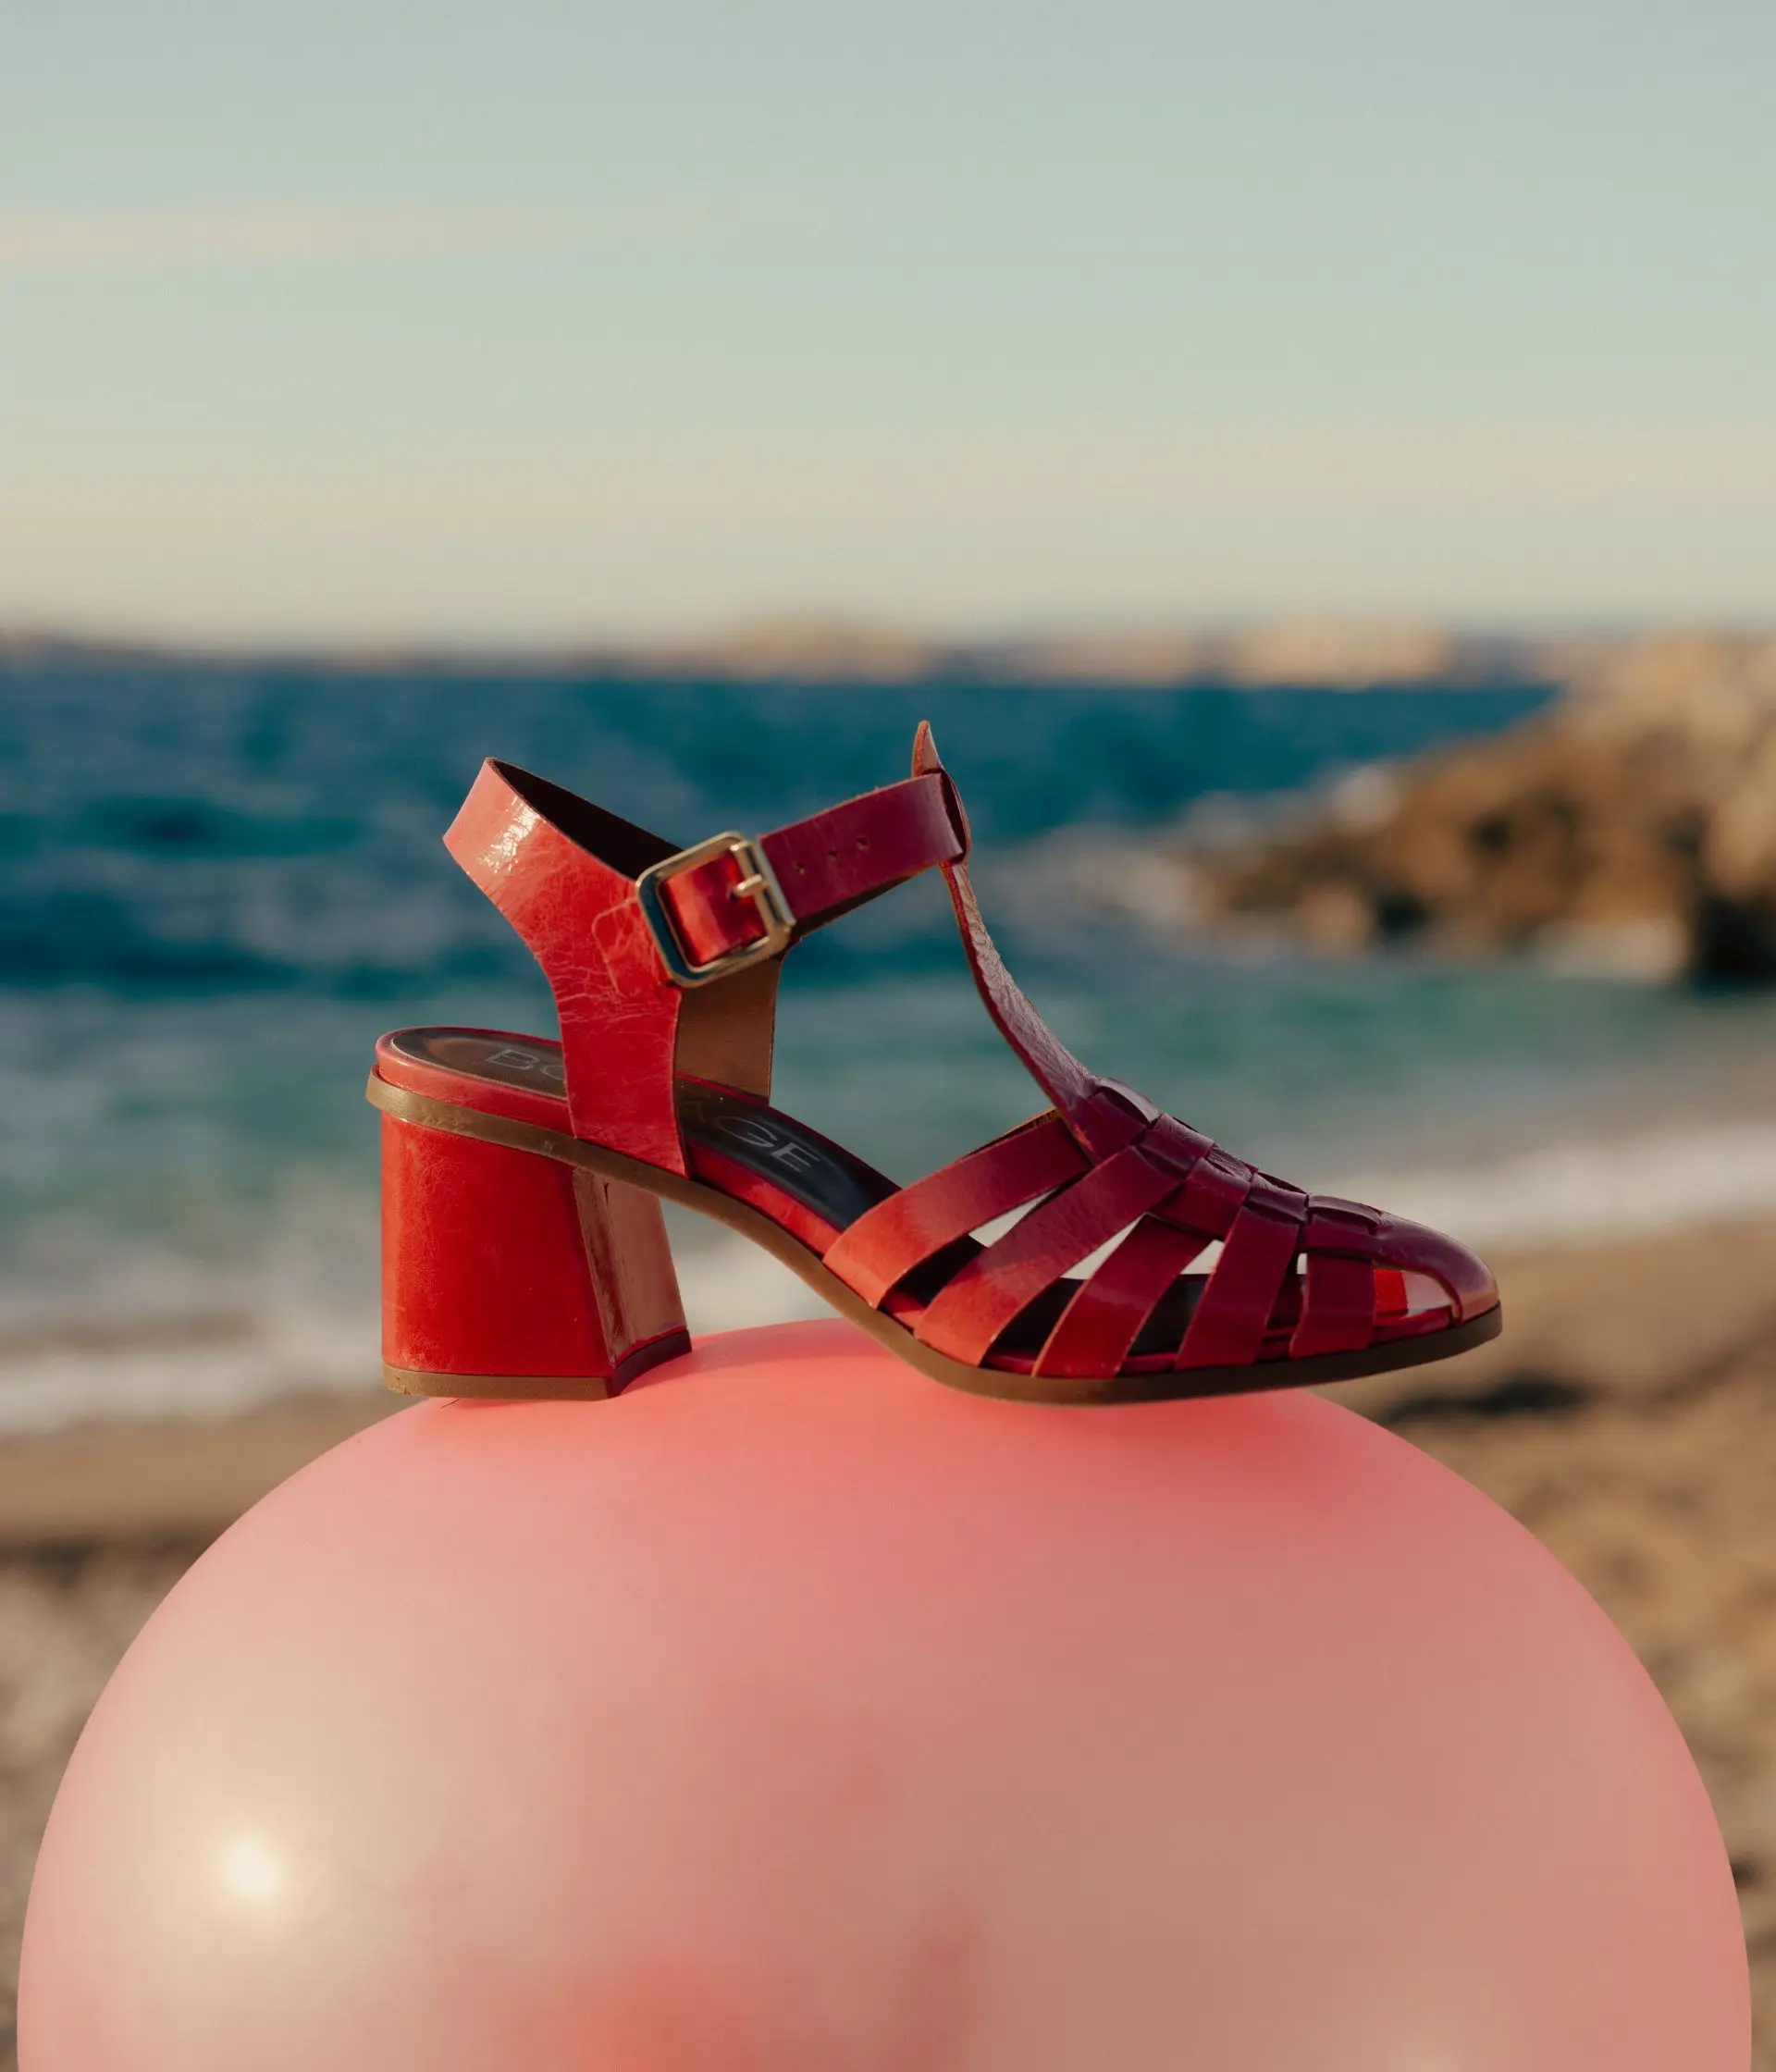 Sandales DELFINA Bocage en cuir Rose : féminines, élégantes et confortables